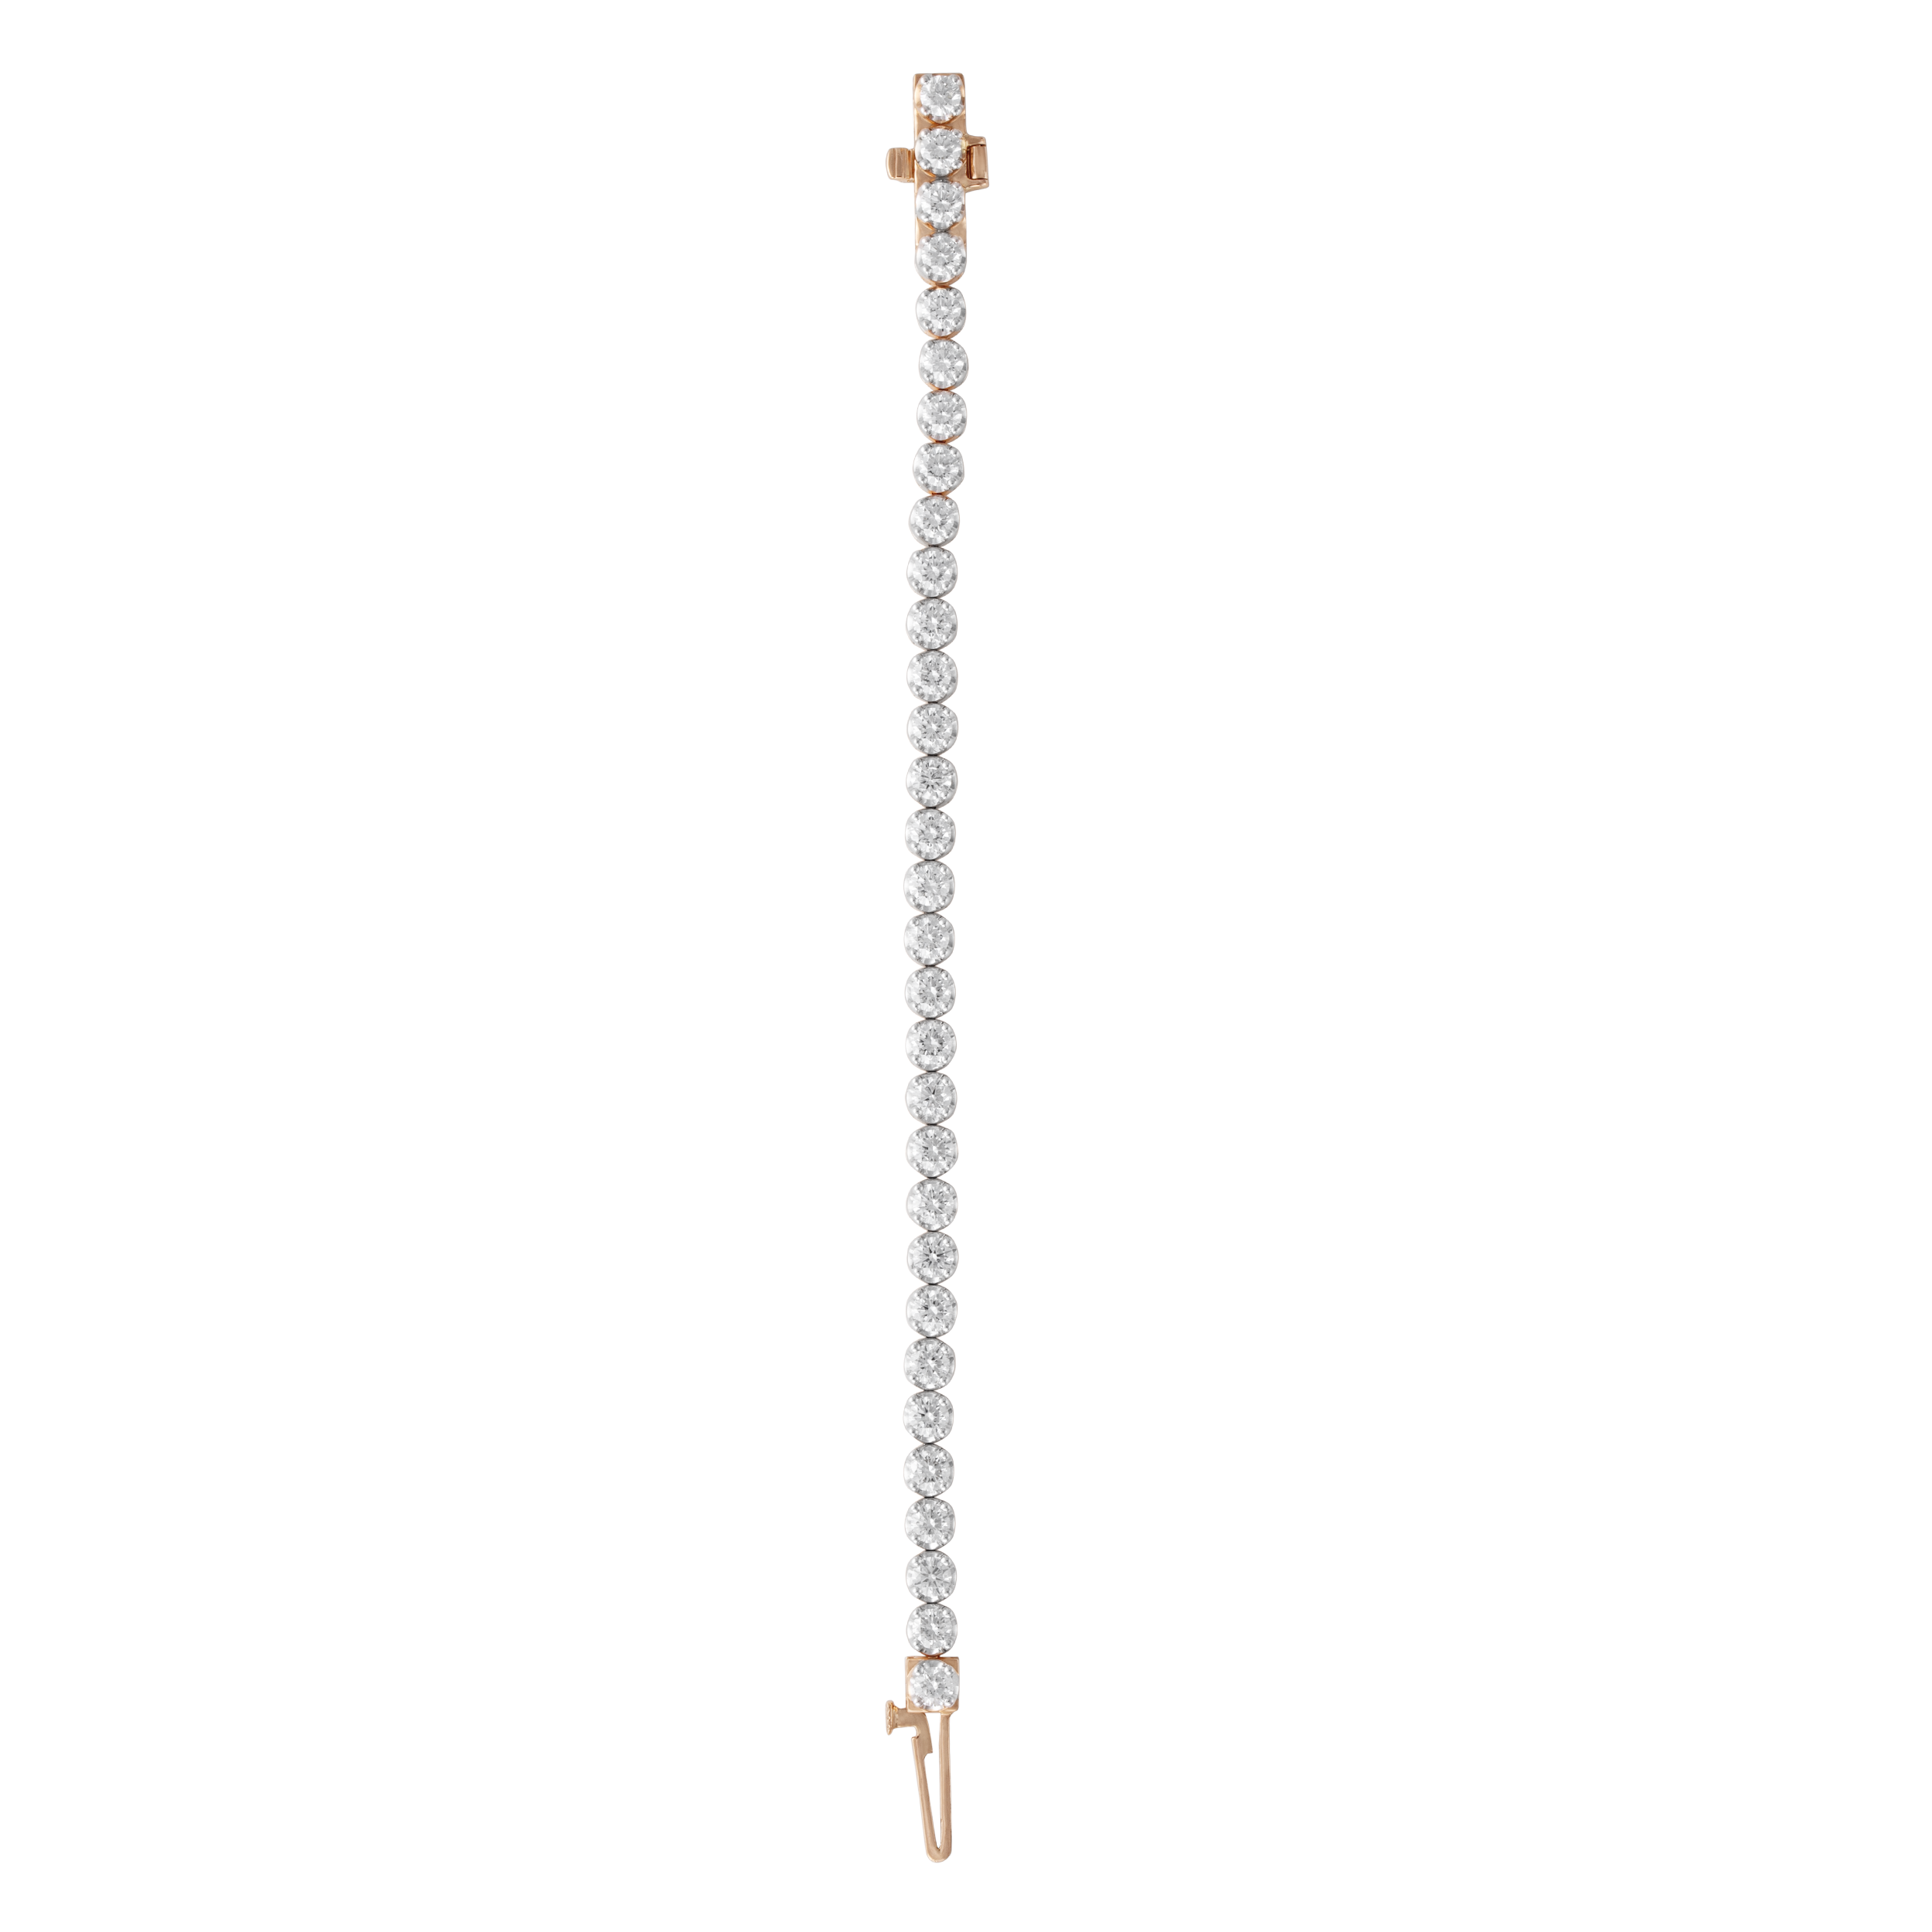 Laboratory Grown Diamond Bracelet | SKU: 0019052083